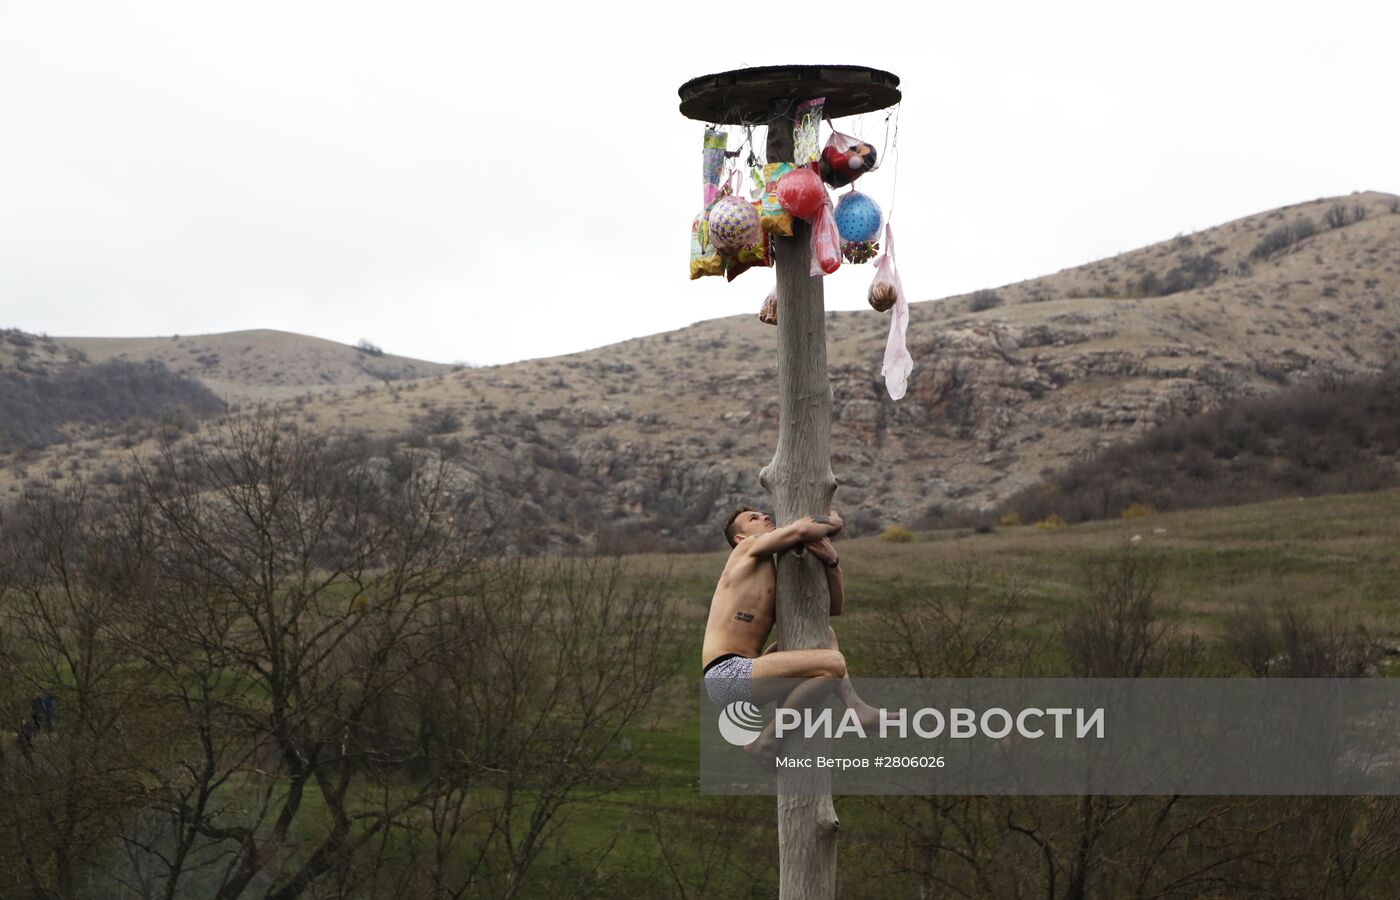 Празднование Масленицы в Крыму